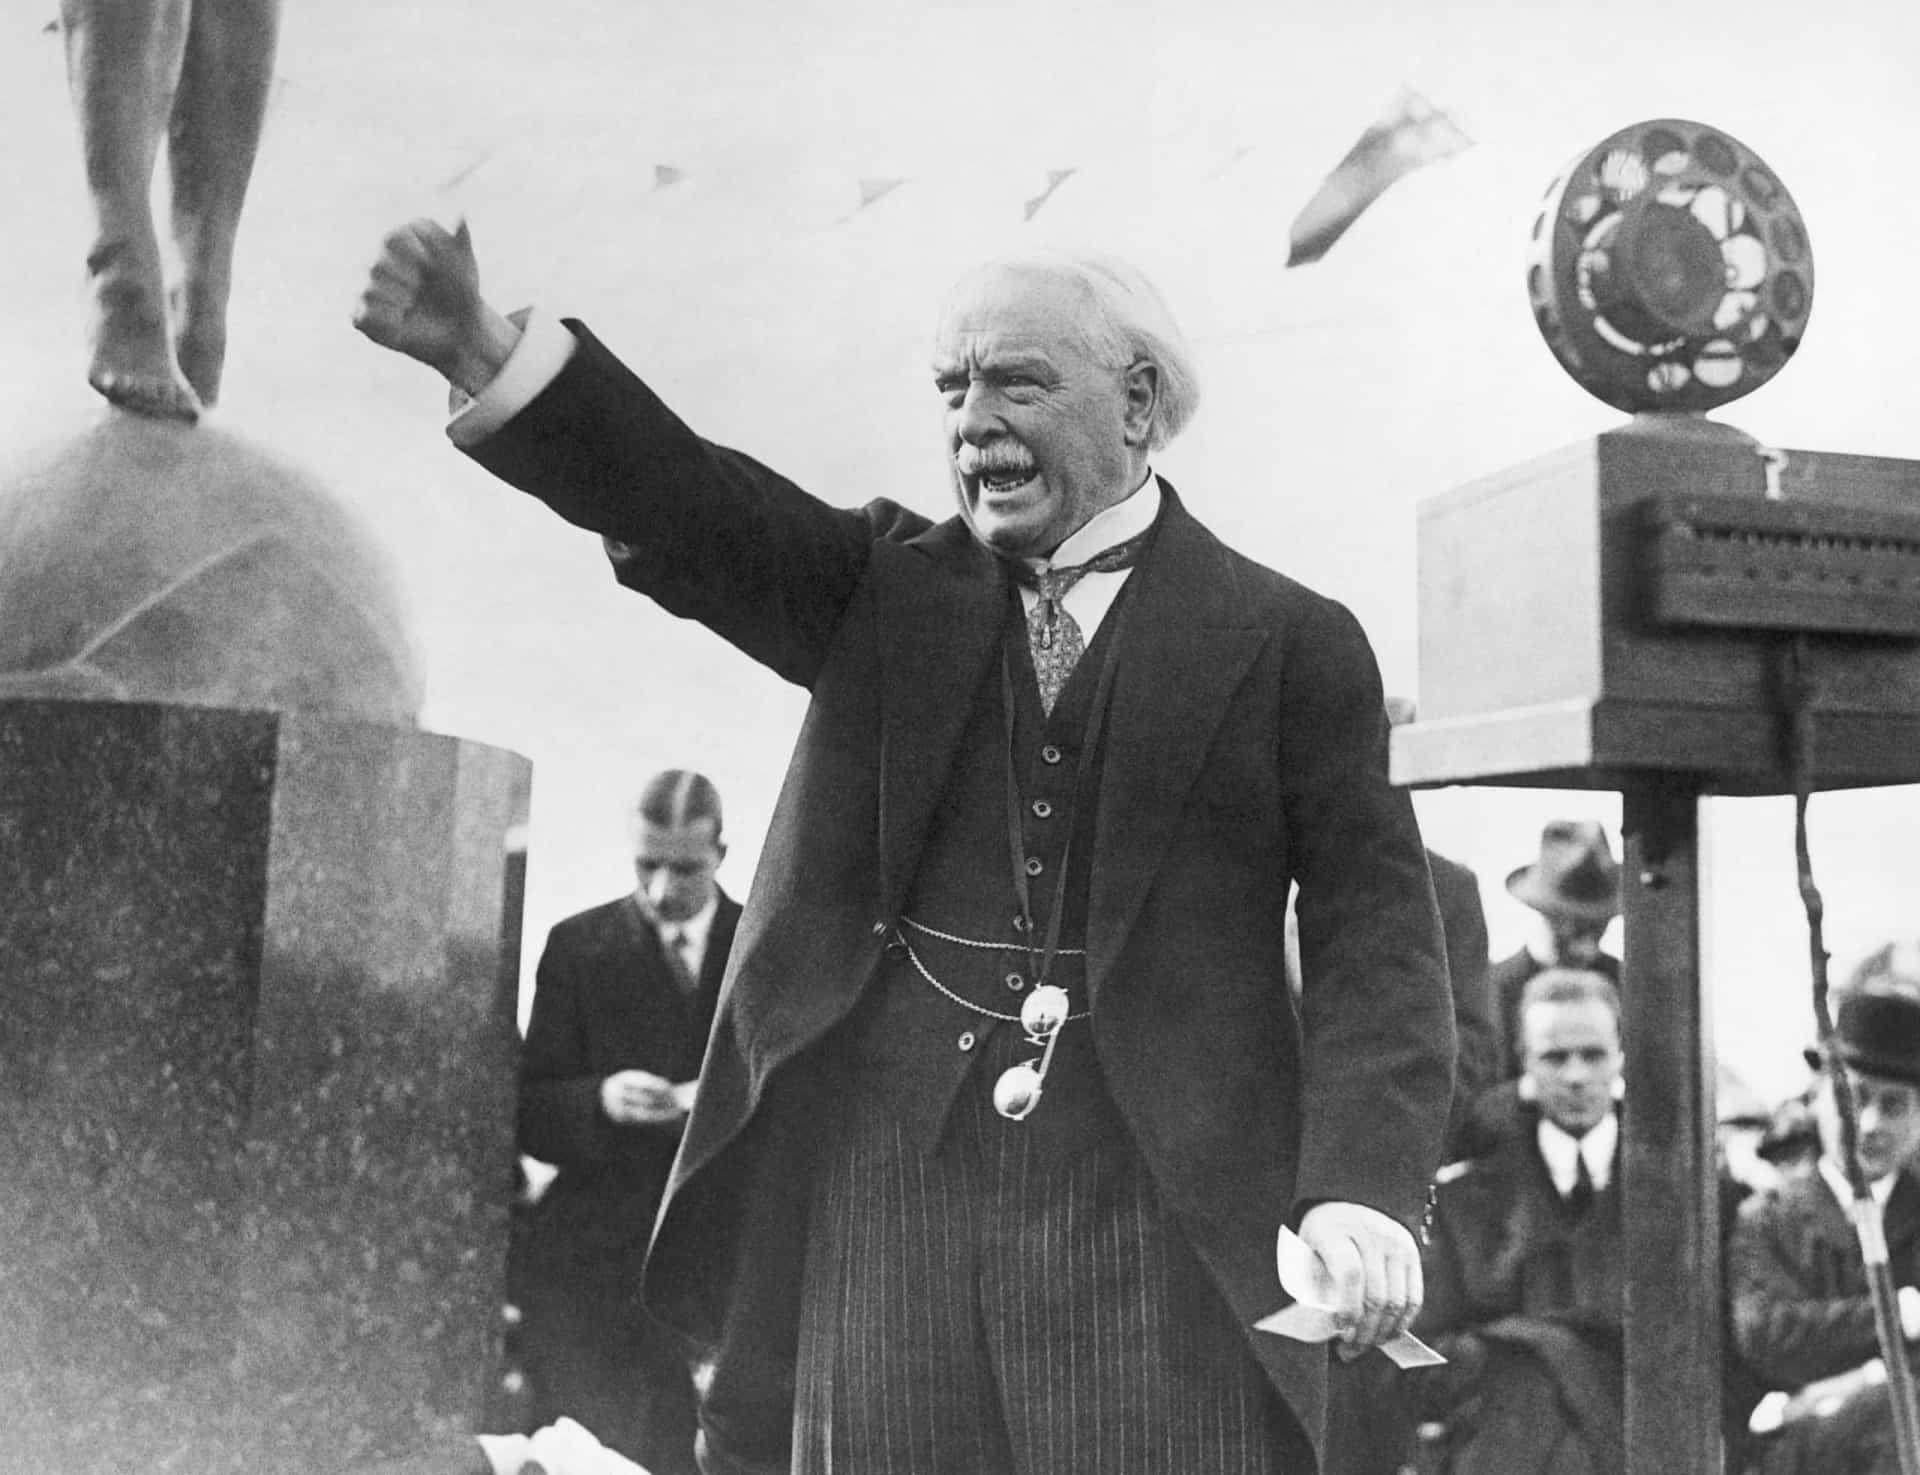 <a href="https://www.mentalfloss.com/article/58376/14-famous-people-who-survived-1918-flu-pandemic" rel="noopener">David Lloyd George</a> era primer ministro de Gran Bretaña durante la Primera Guerra Mundial. Enfermó al final de la guerra y se dice que estuvo a punto de morir.